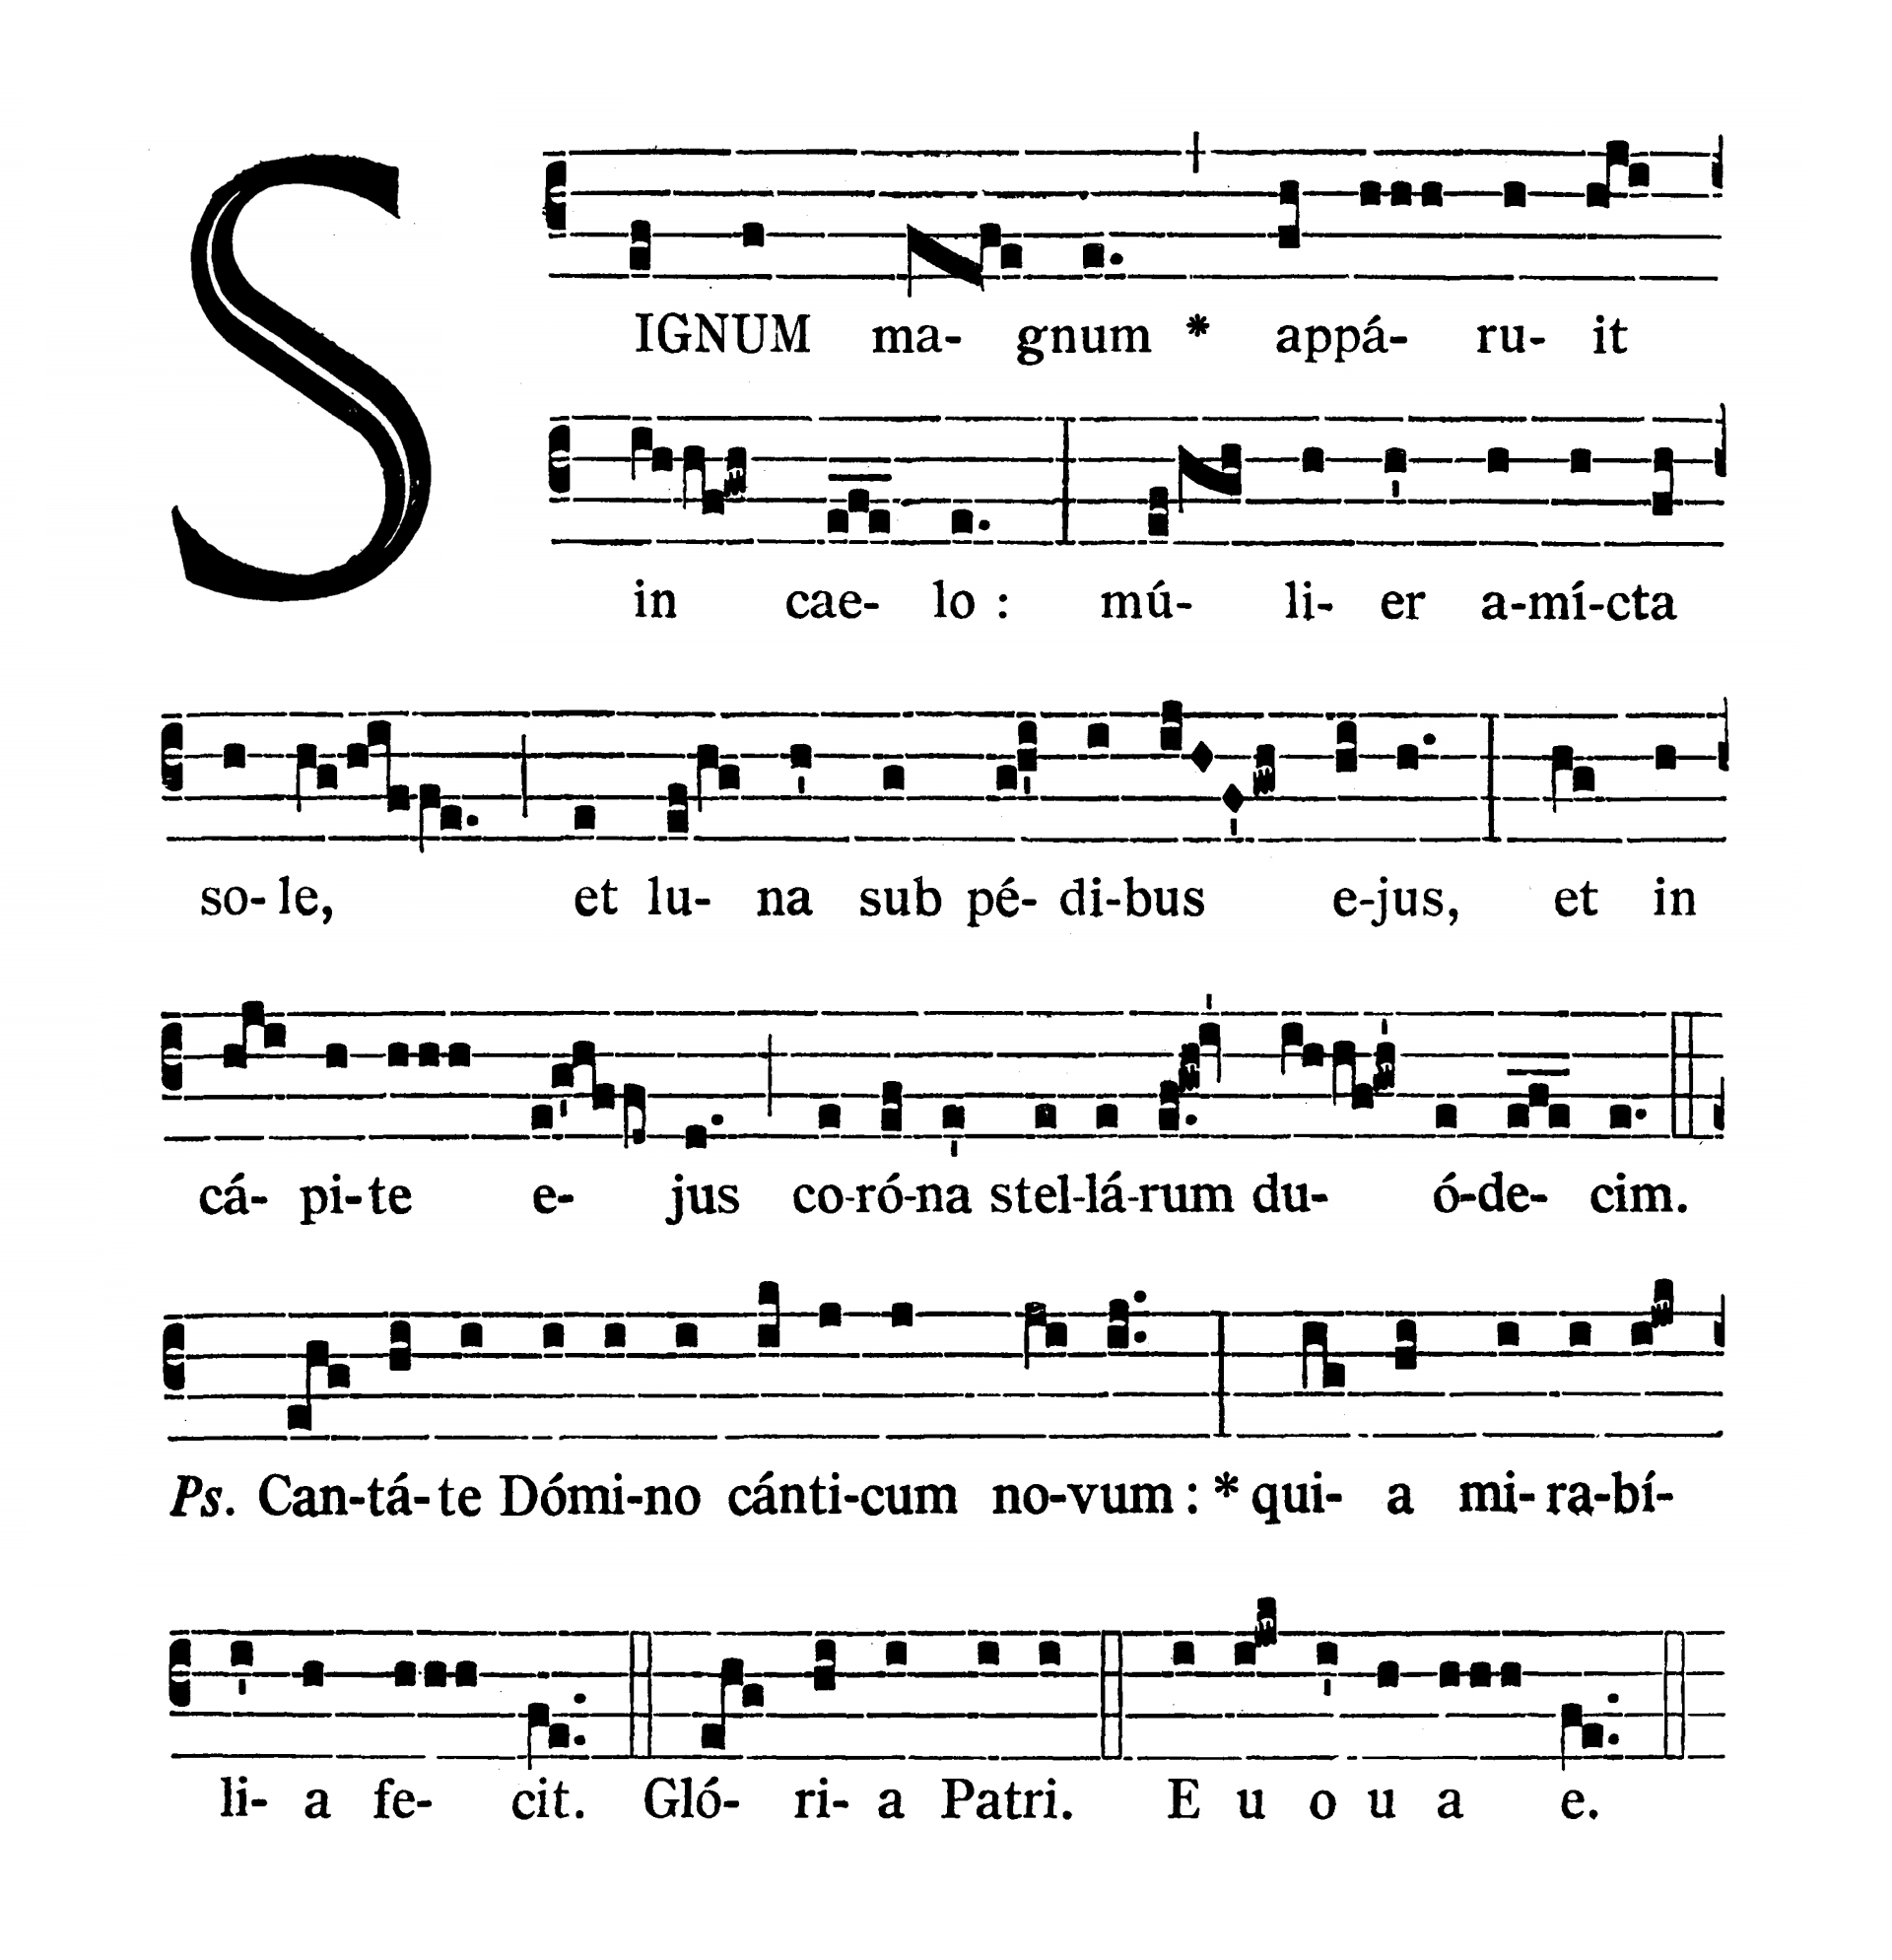 In Assumptione Beatae Mariae Virginis - Introitus (Signum magnum)